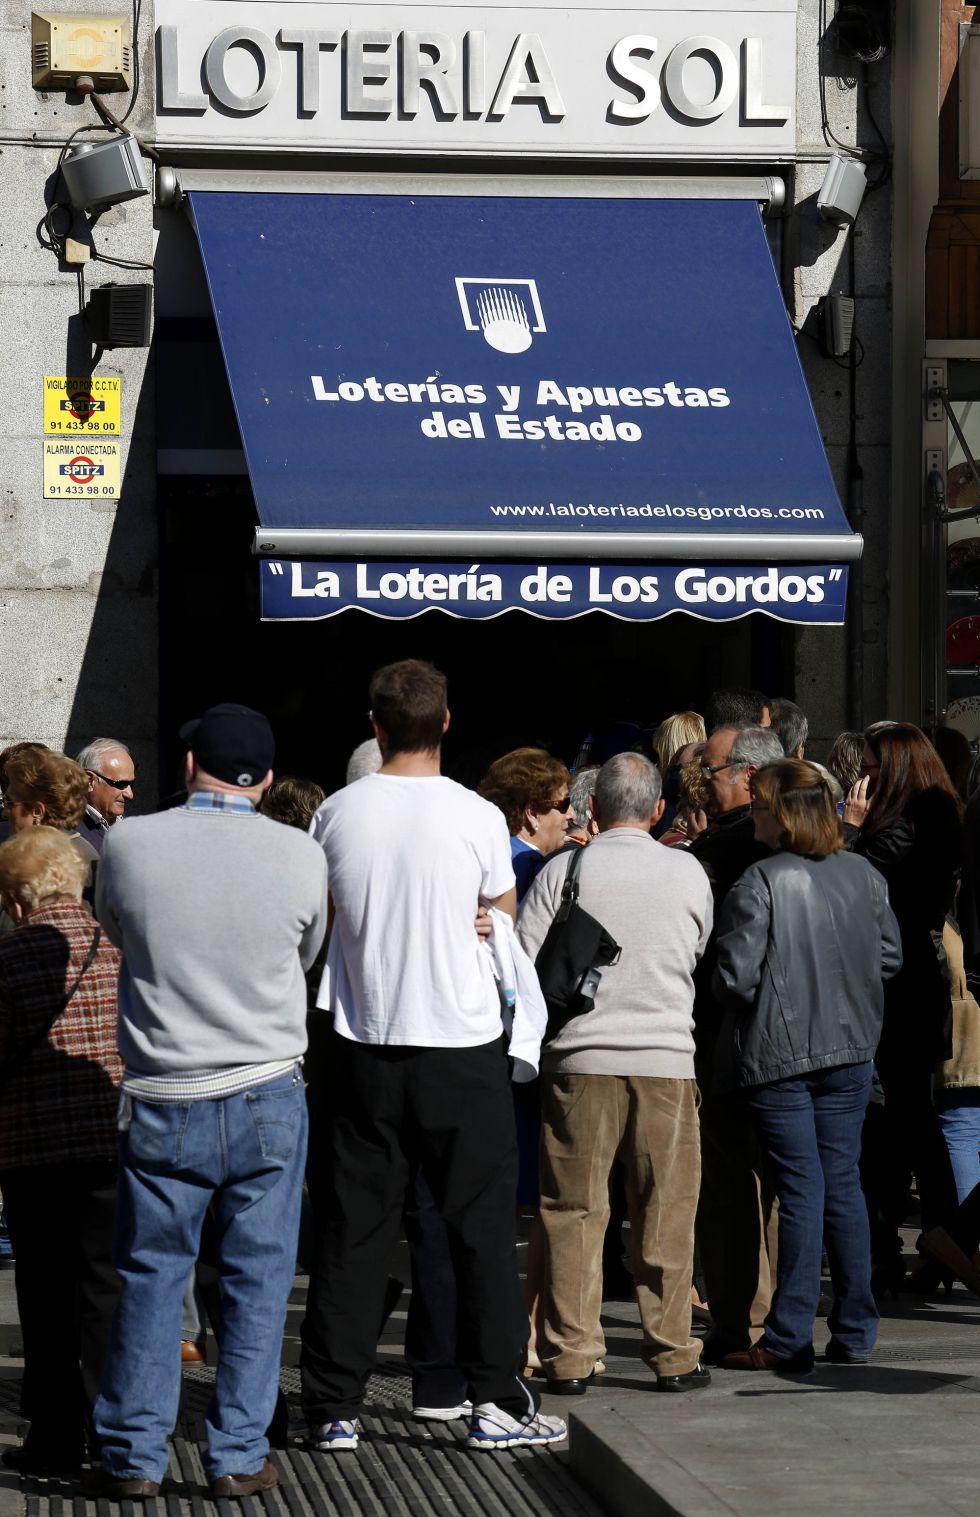 Los españoles prefieren ahorrar en regalos que en lotería